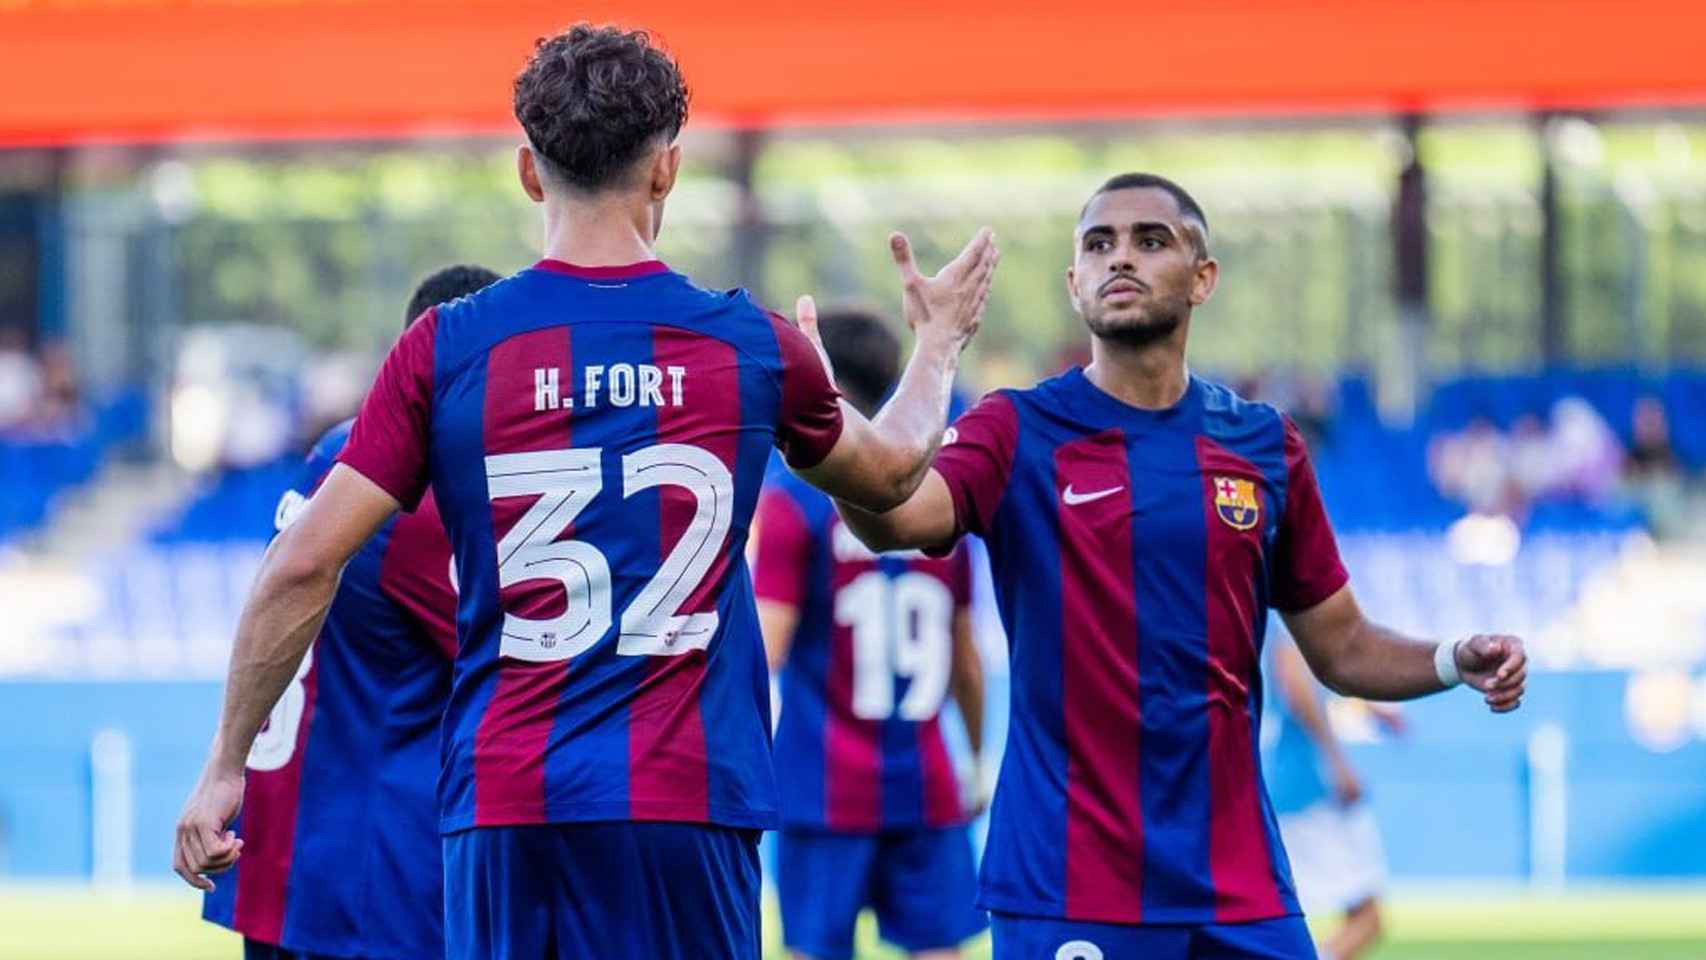 Héctor Fort festeja su gol anotado en un partido del filial del Barça